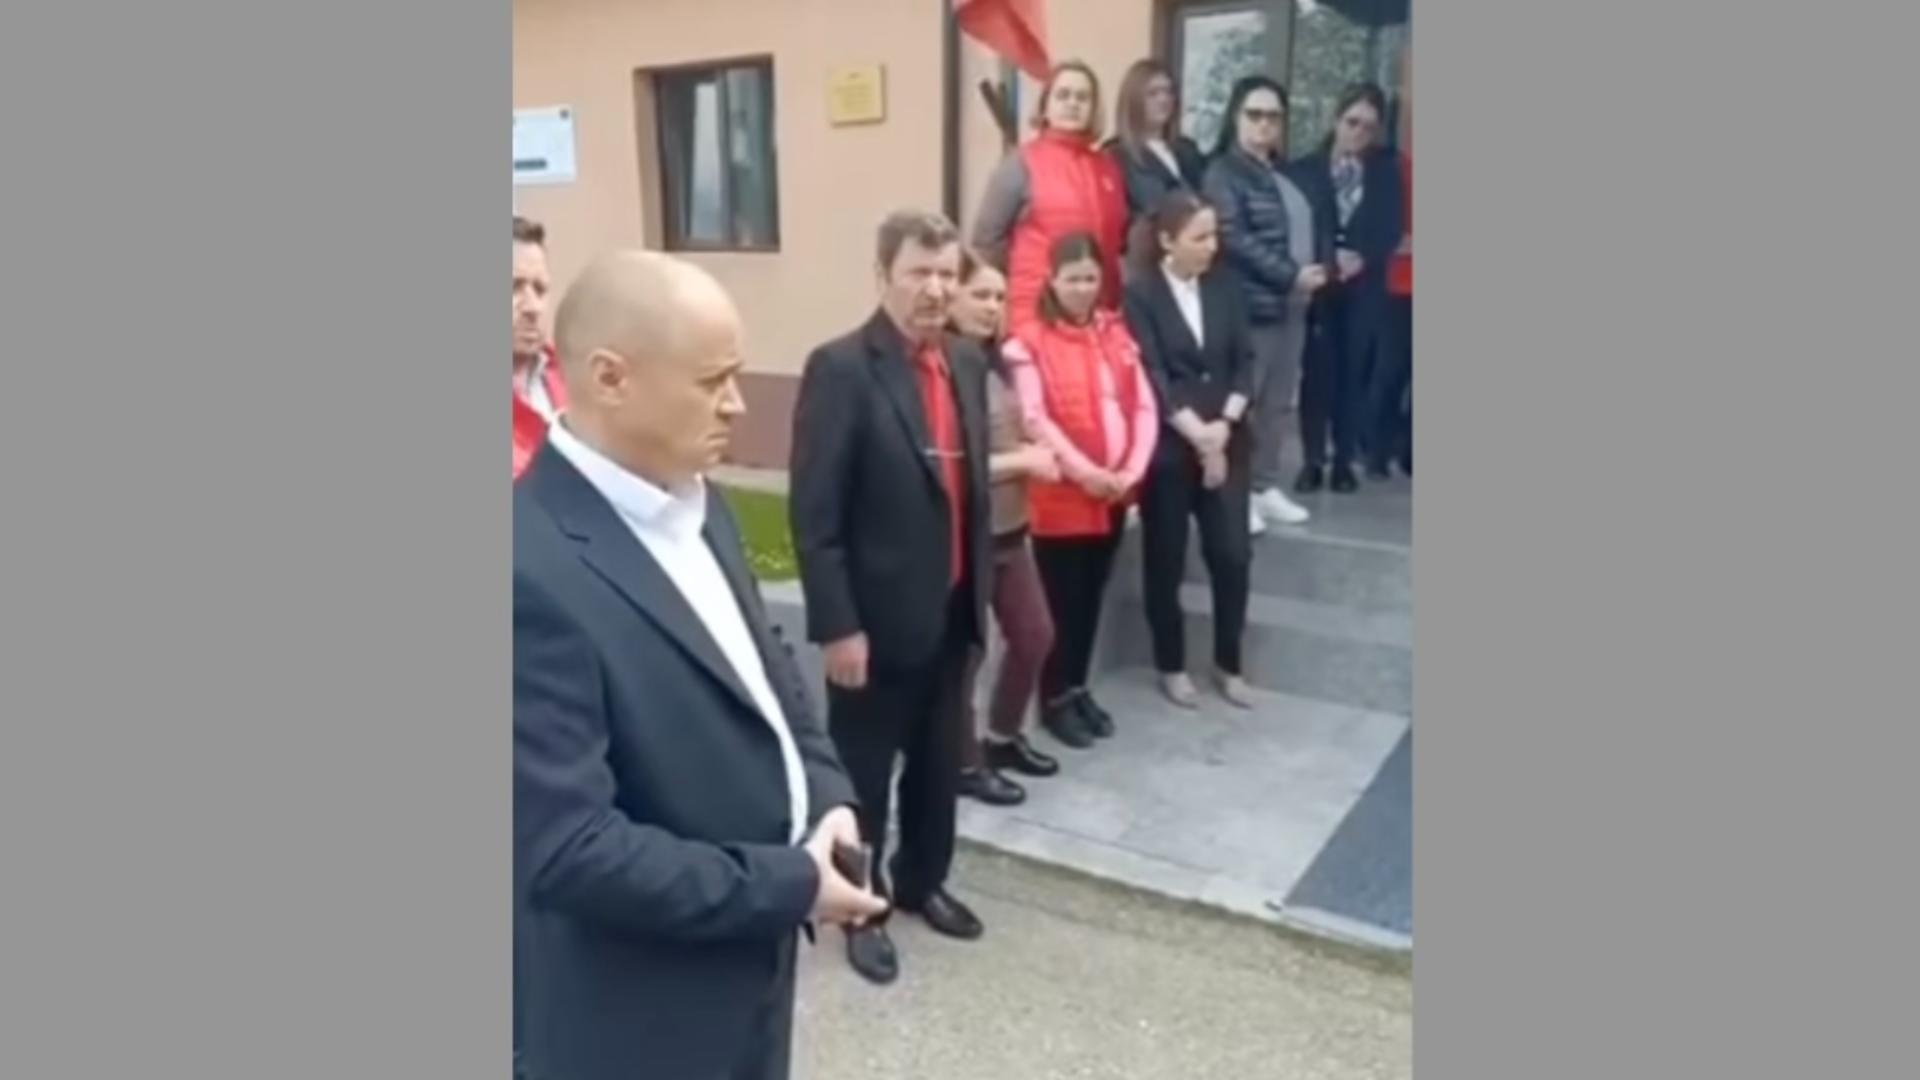 Candidat PSD, delir în campanie: Pensionarii care nu ne votează să fie blestemați - VIDEO